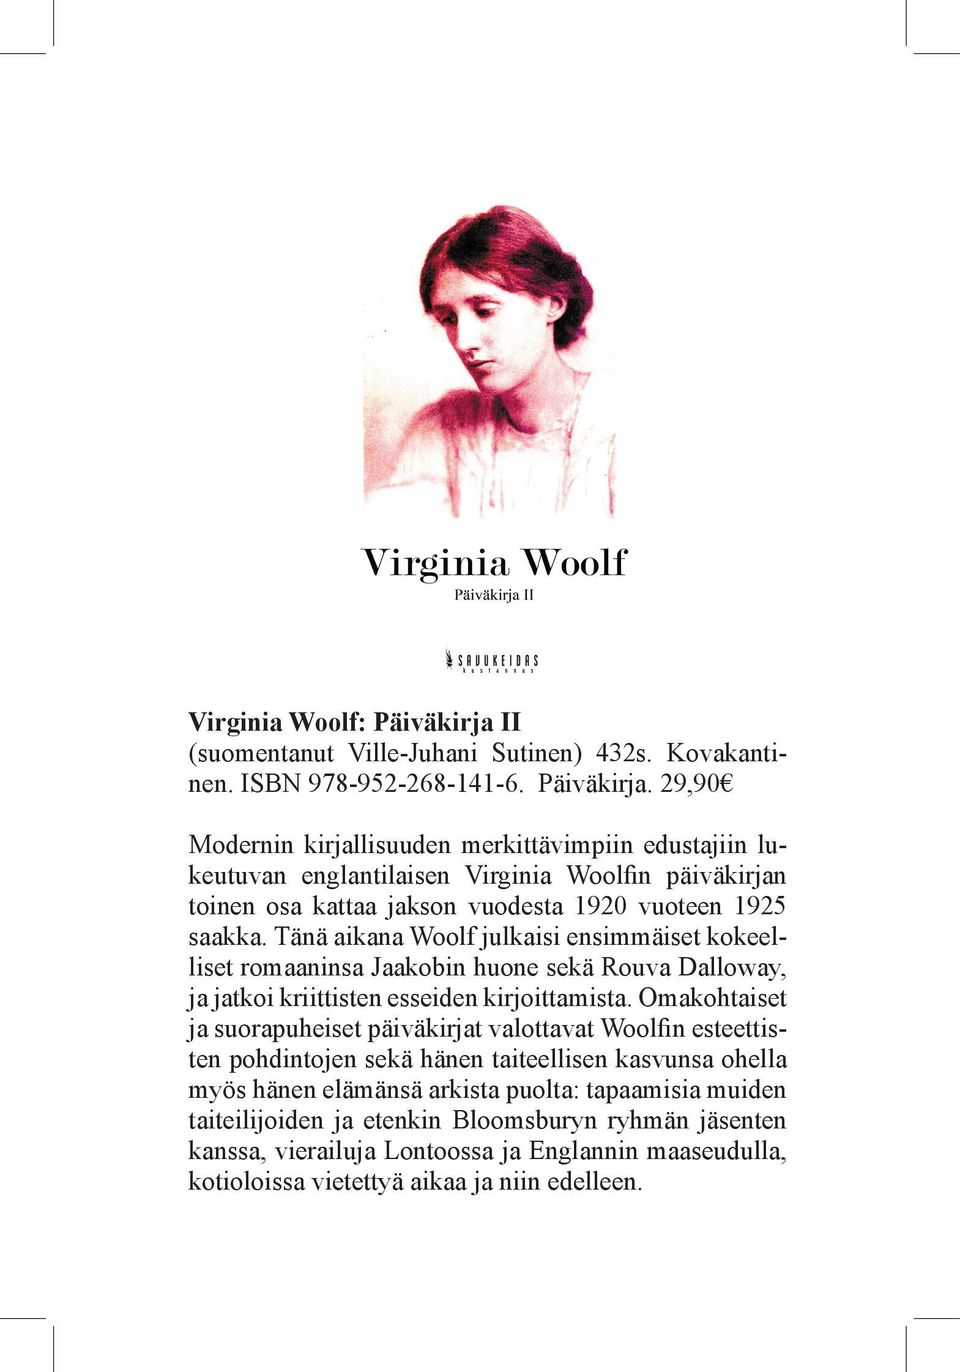 29,90 Modernin kirjallisuuden merkittävimpiin edustajiin lukeutuvan englantilaisen Virginia Woolfin päiväkirjan toinen osa kattaa jakson vuodesta 1920 vuoteen 1925 saakka.